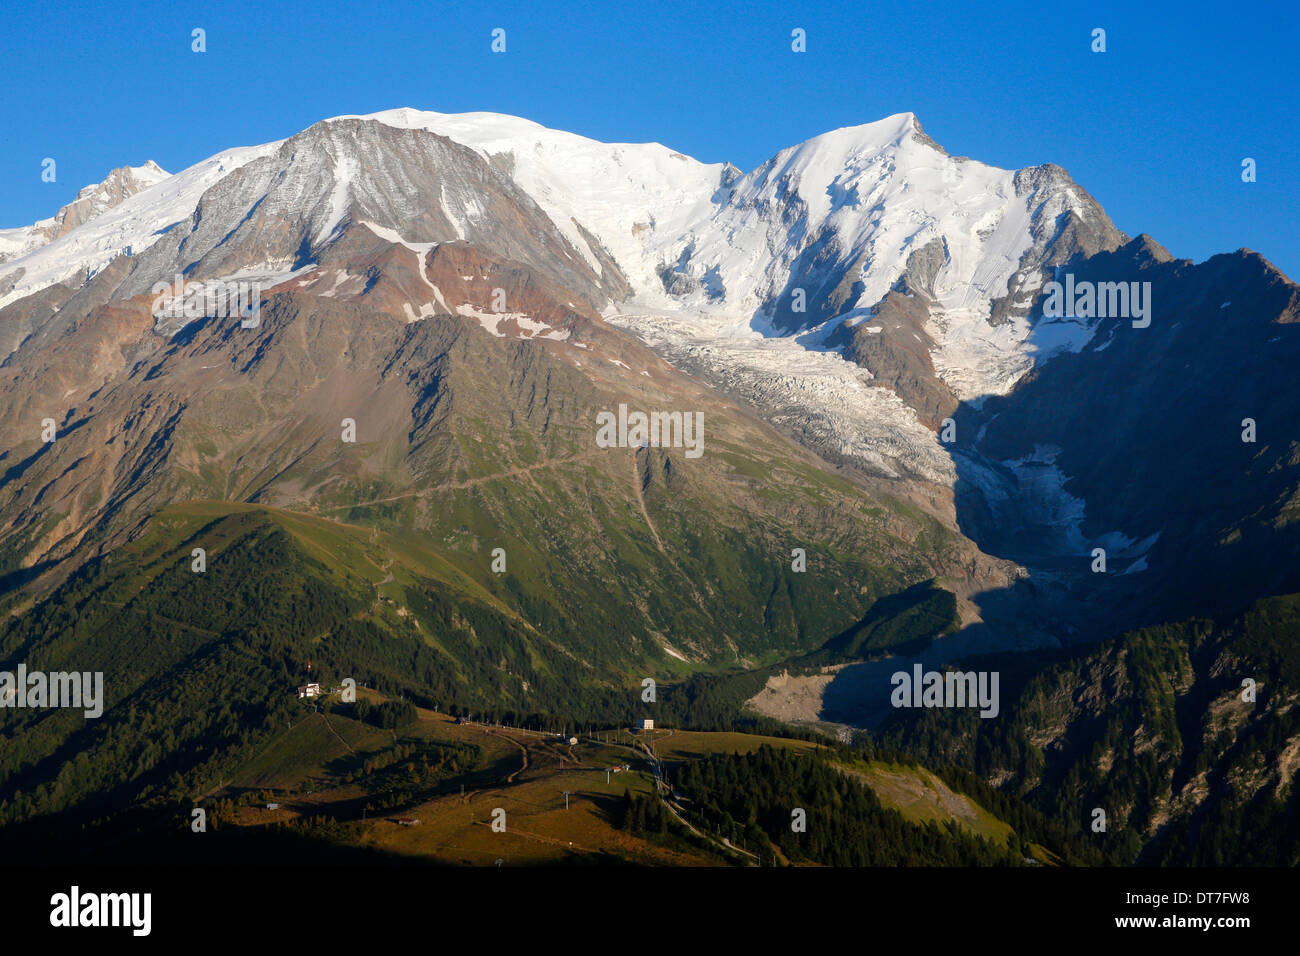 Sulle Alpi francesi. Il Mont Blanc. La più alta montagna d'Europa (4810 m). Foto Stock